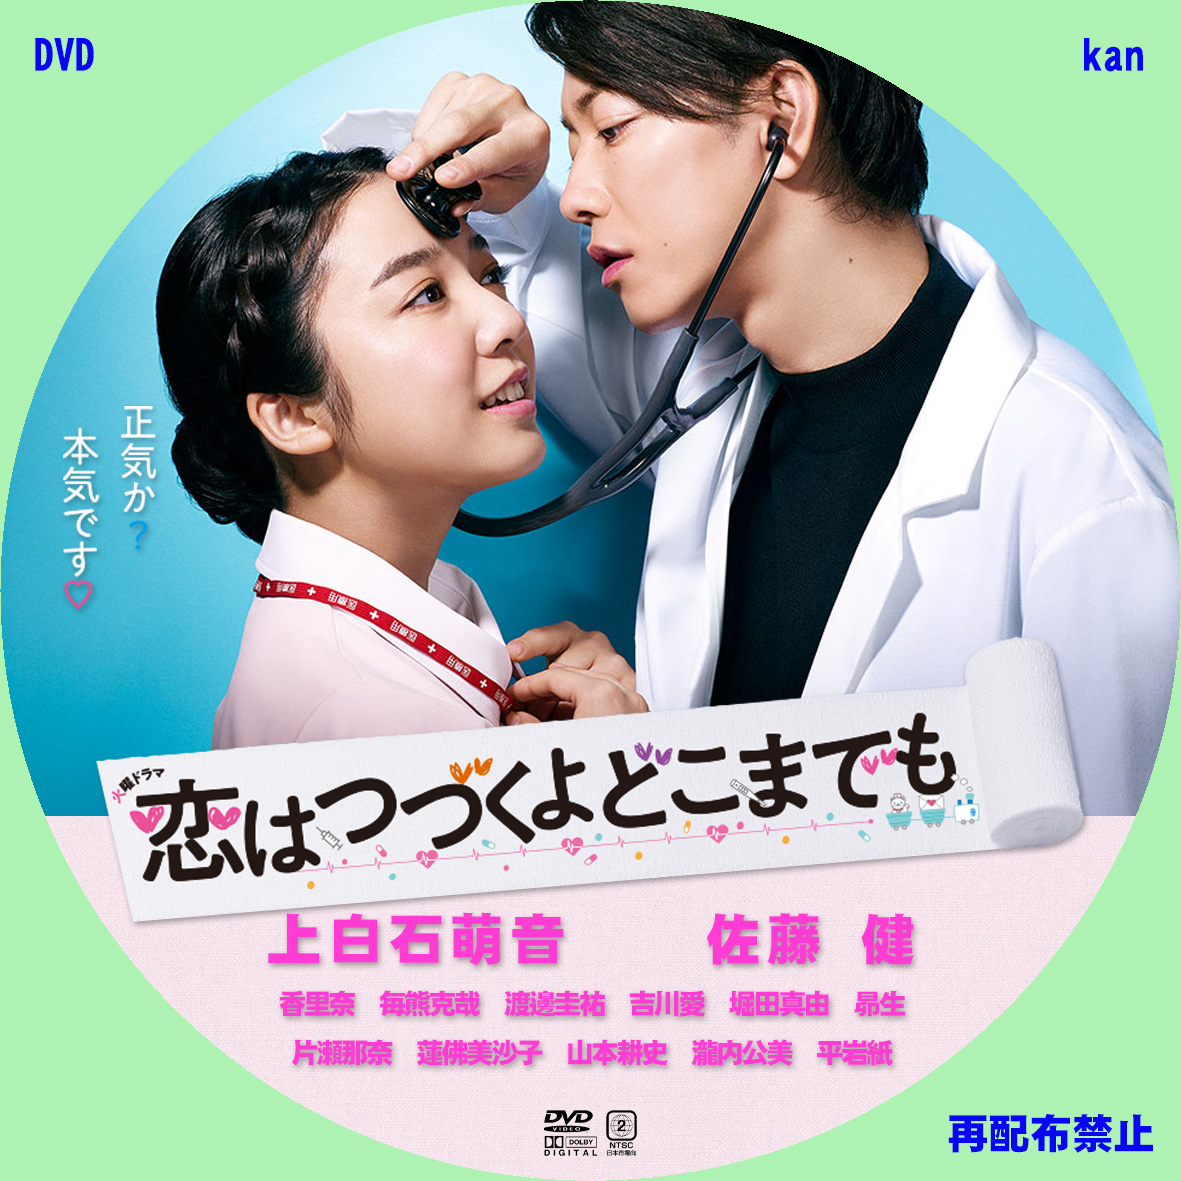 DVD/Blu-rayラベル TVドラマ「恋はつづくよどこまでも」 | ｋａｎの ...